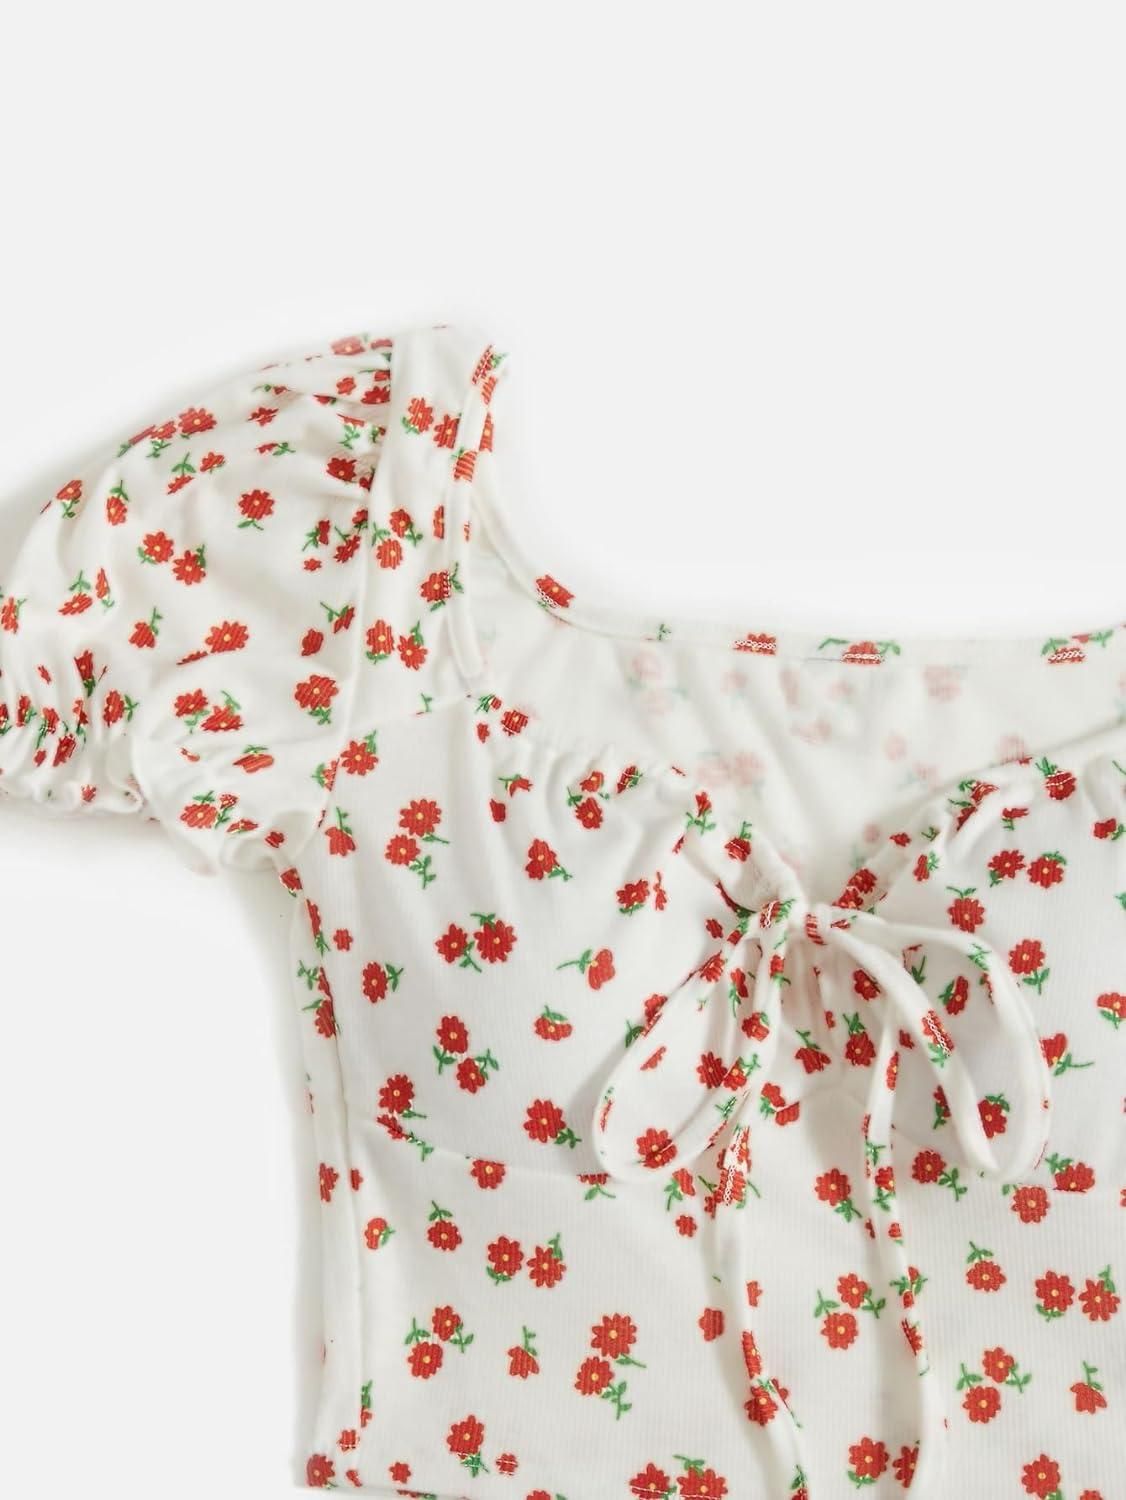 AAHWAN Puff Sleeves Floral Print Crop Top For Women's